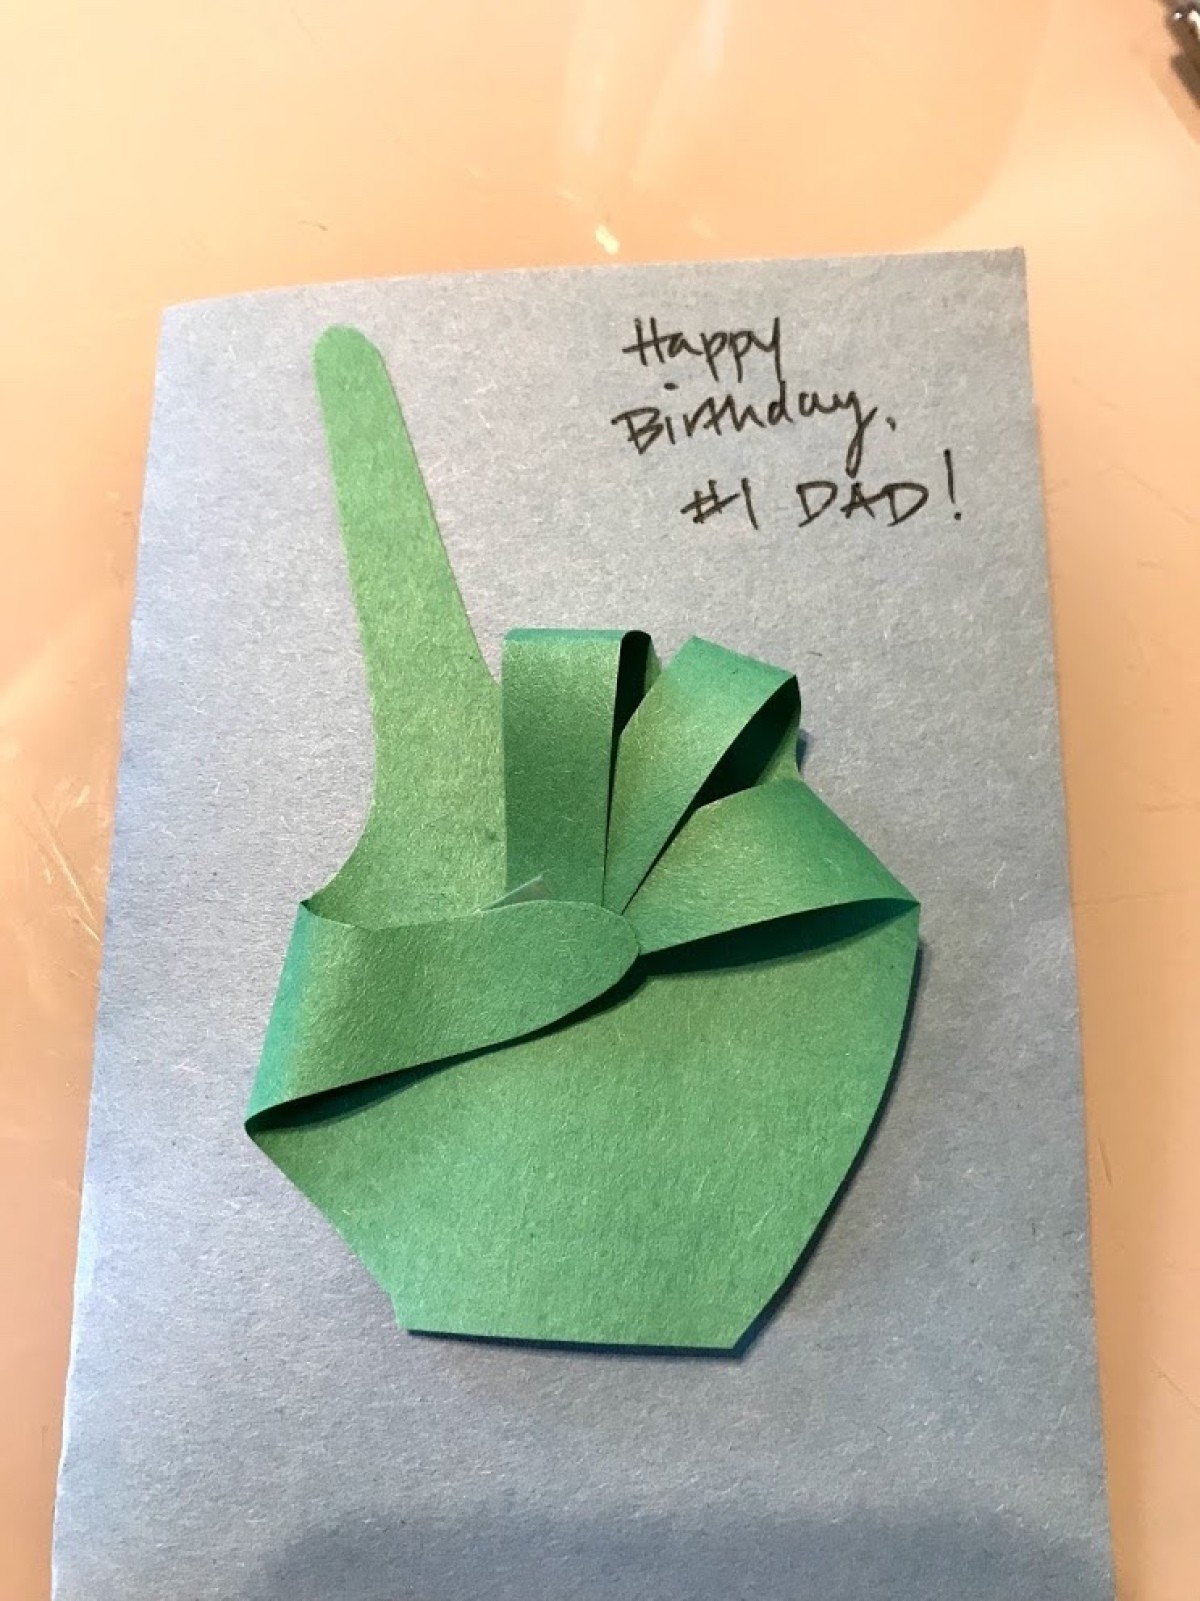 Making a 1 Dad Birthday Card ThriftyFun